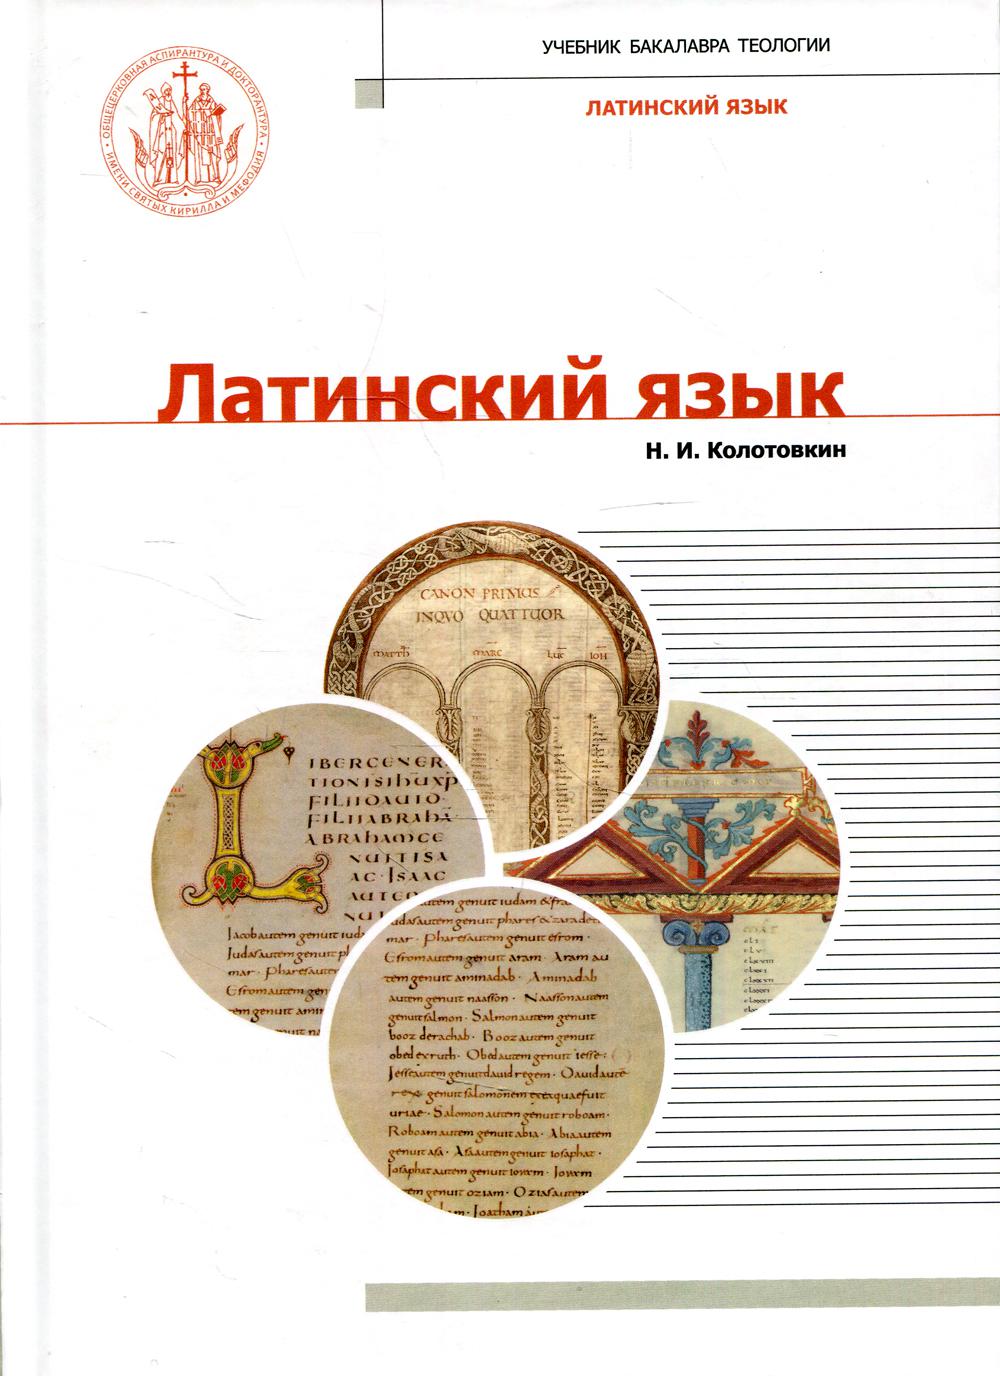 Латинский язык: Учебник бакалавра теологии. 2-е изд., испр., и доп